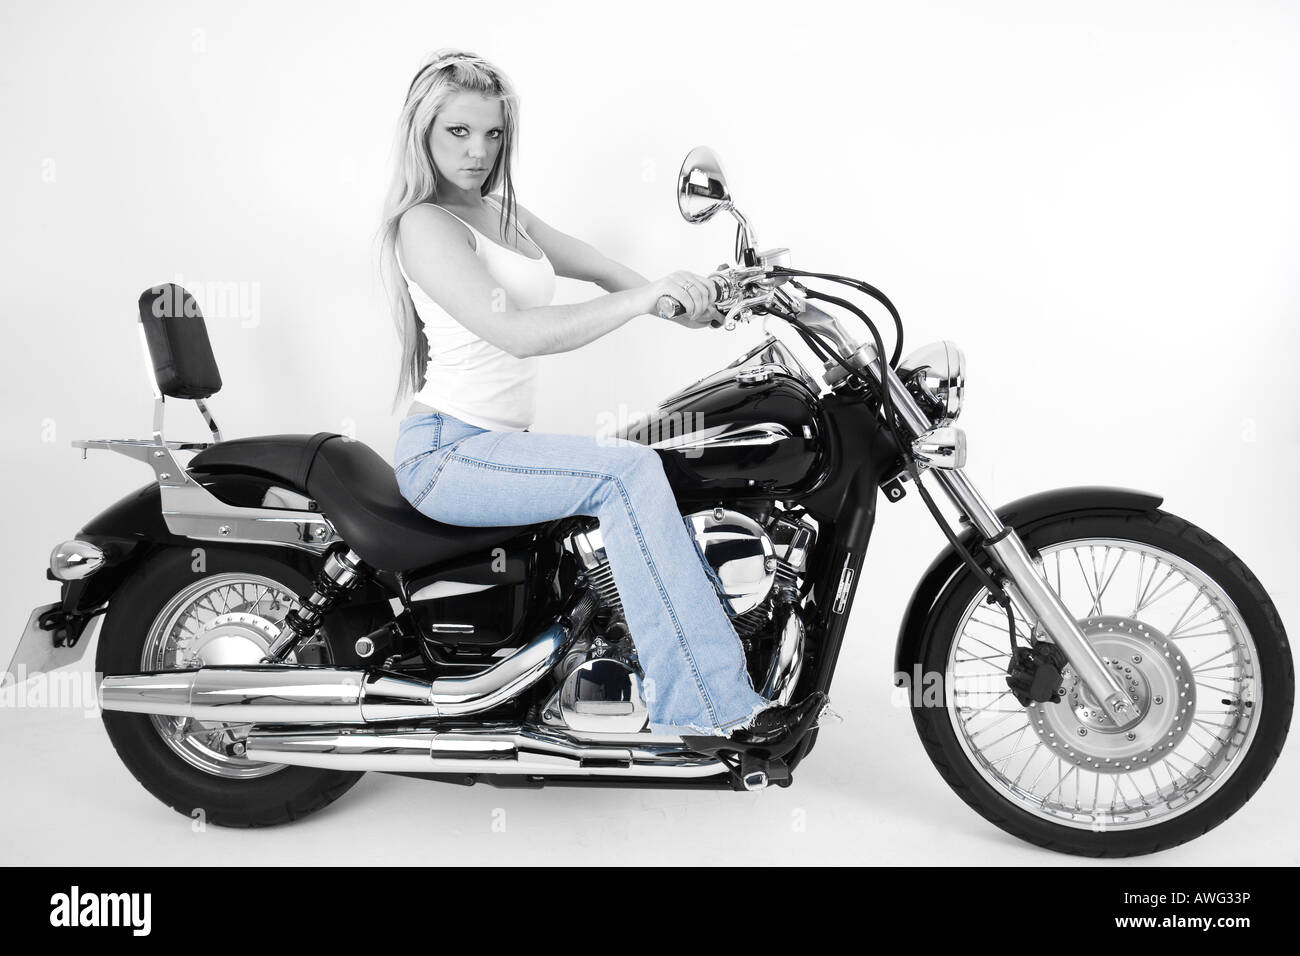 Sexy biker Stock Photo